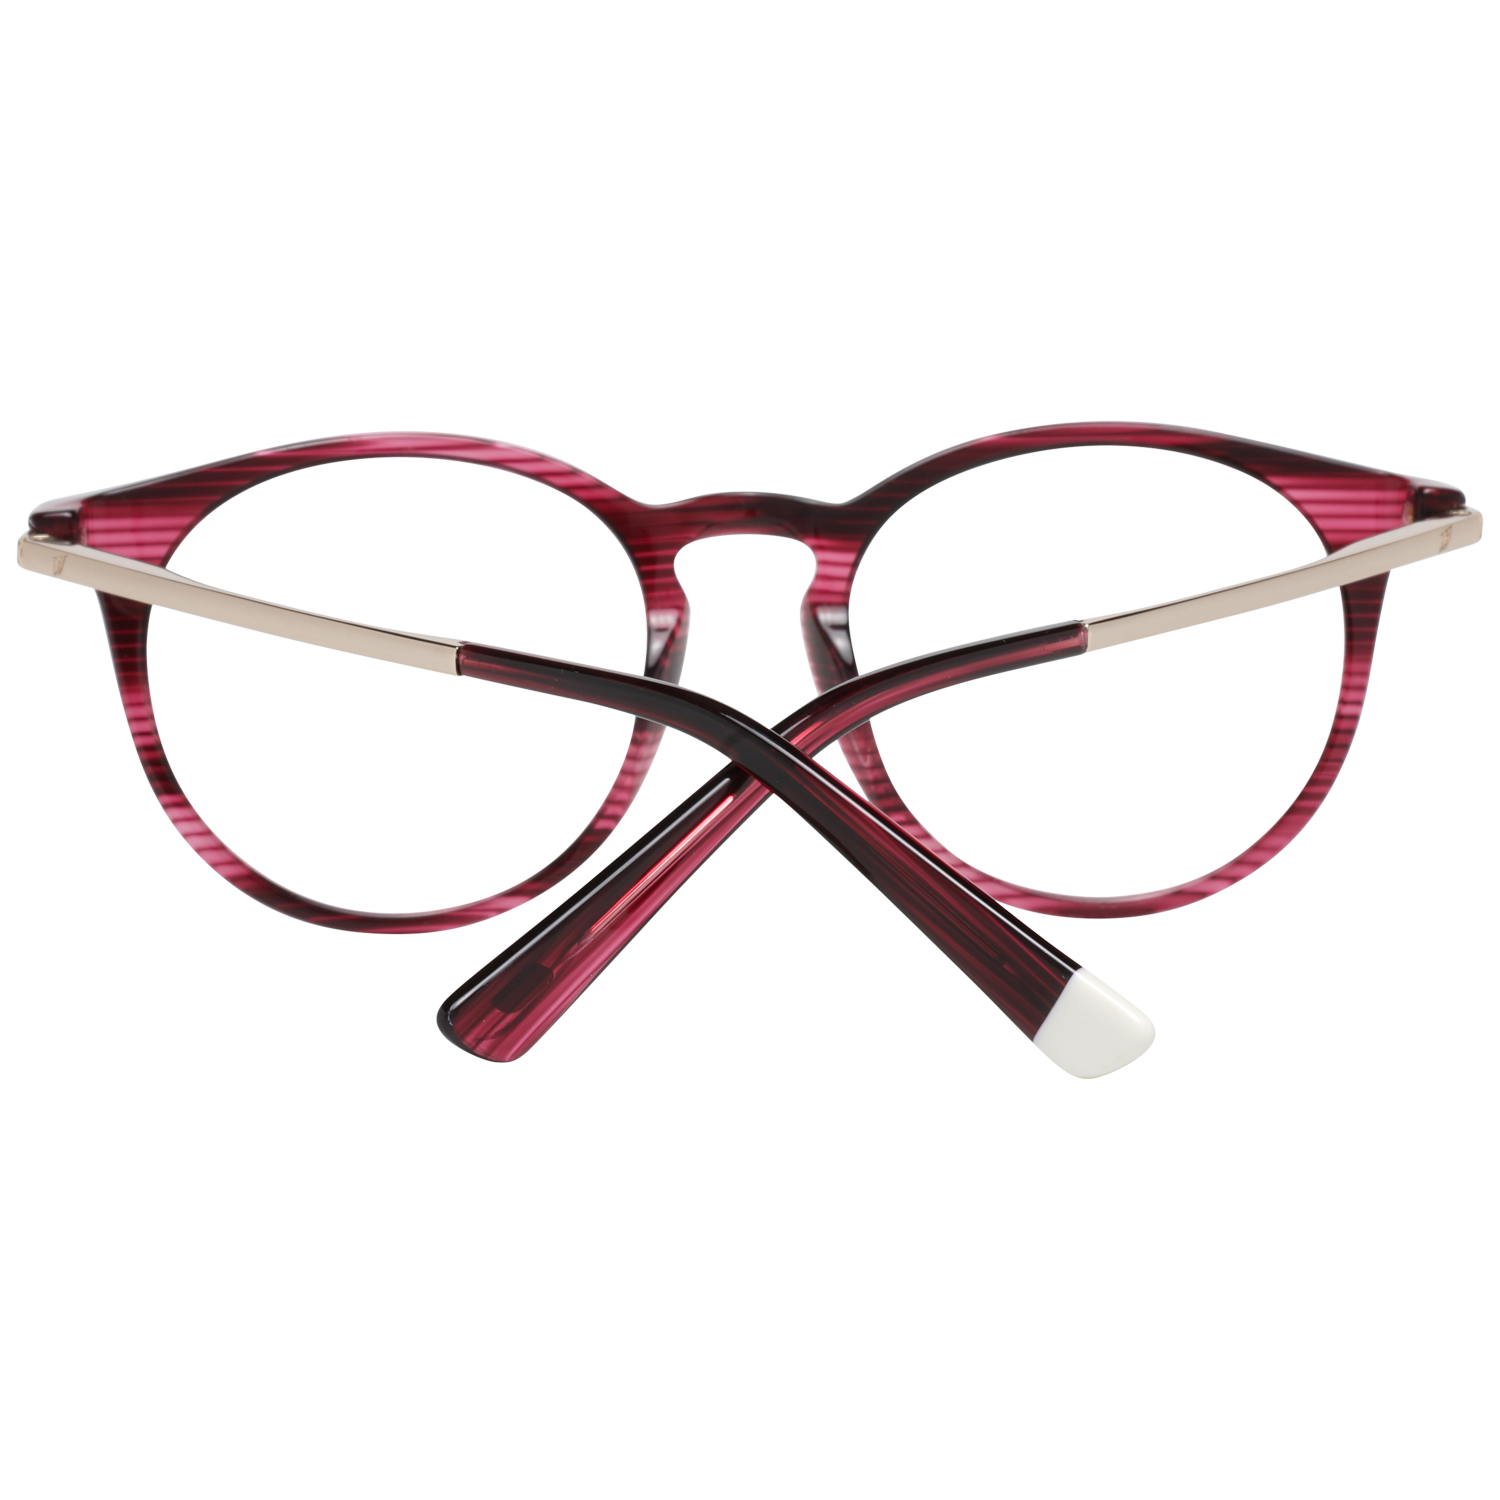 Web Frames Web Glasses Optical Frame WE5240 083 50 Eyeglasses Eyewear UK USA Australia 